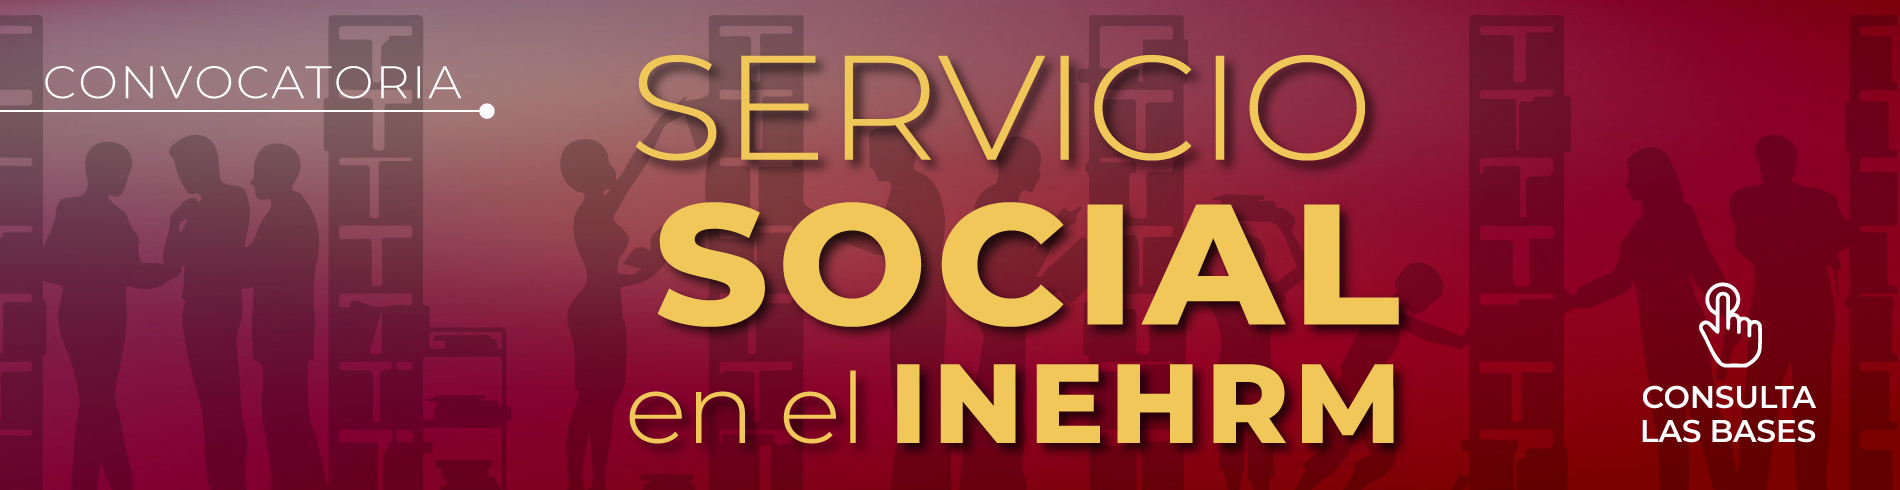 Servicio social